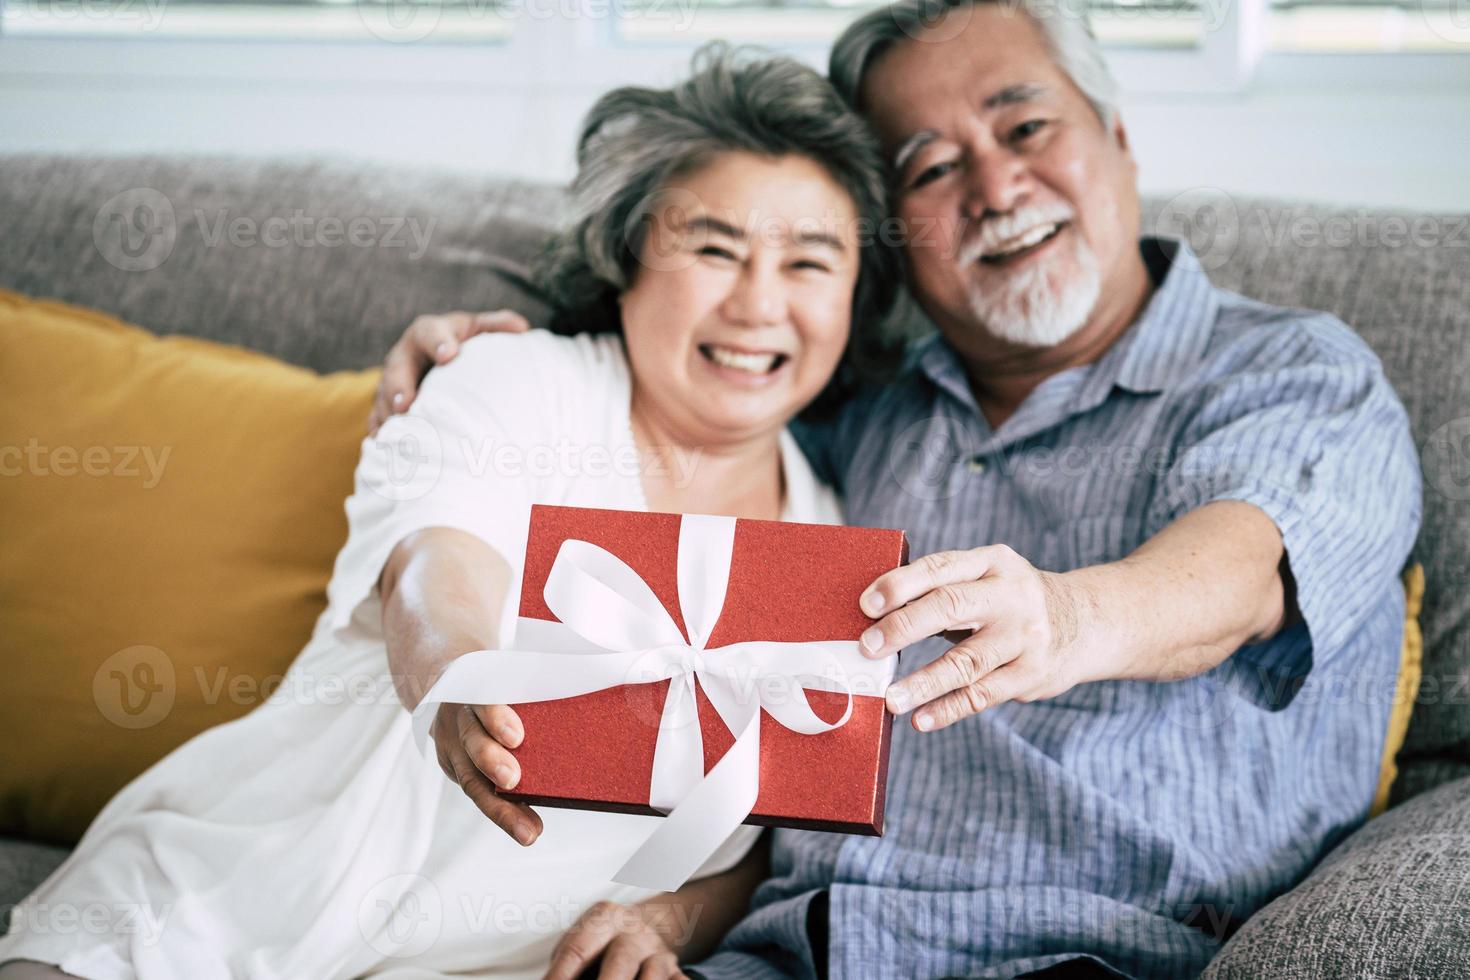 bejaarde echtpaar verrast met geschenkdoos in de woonkamer foto